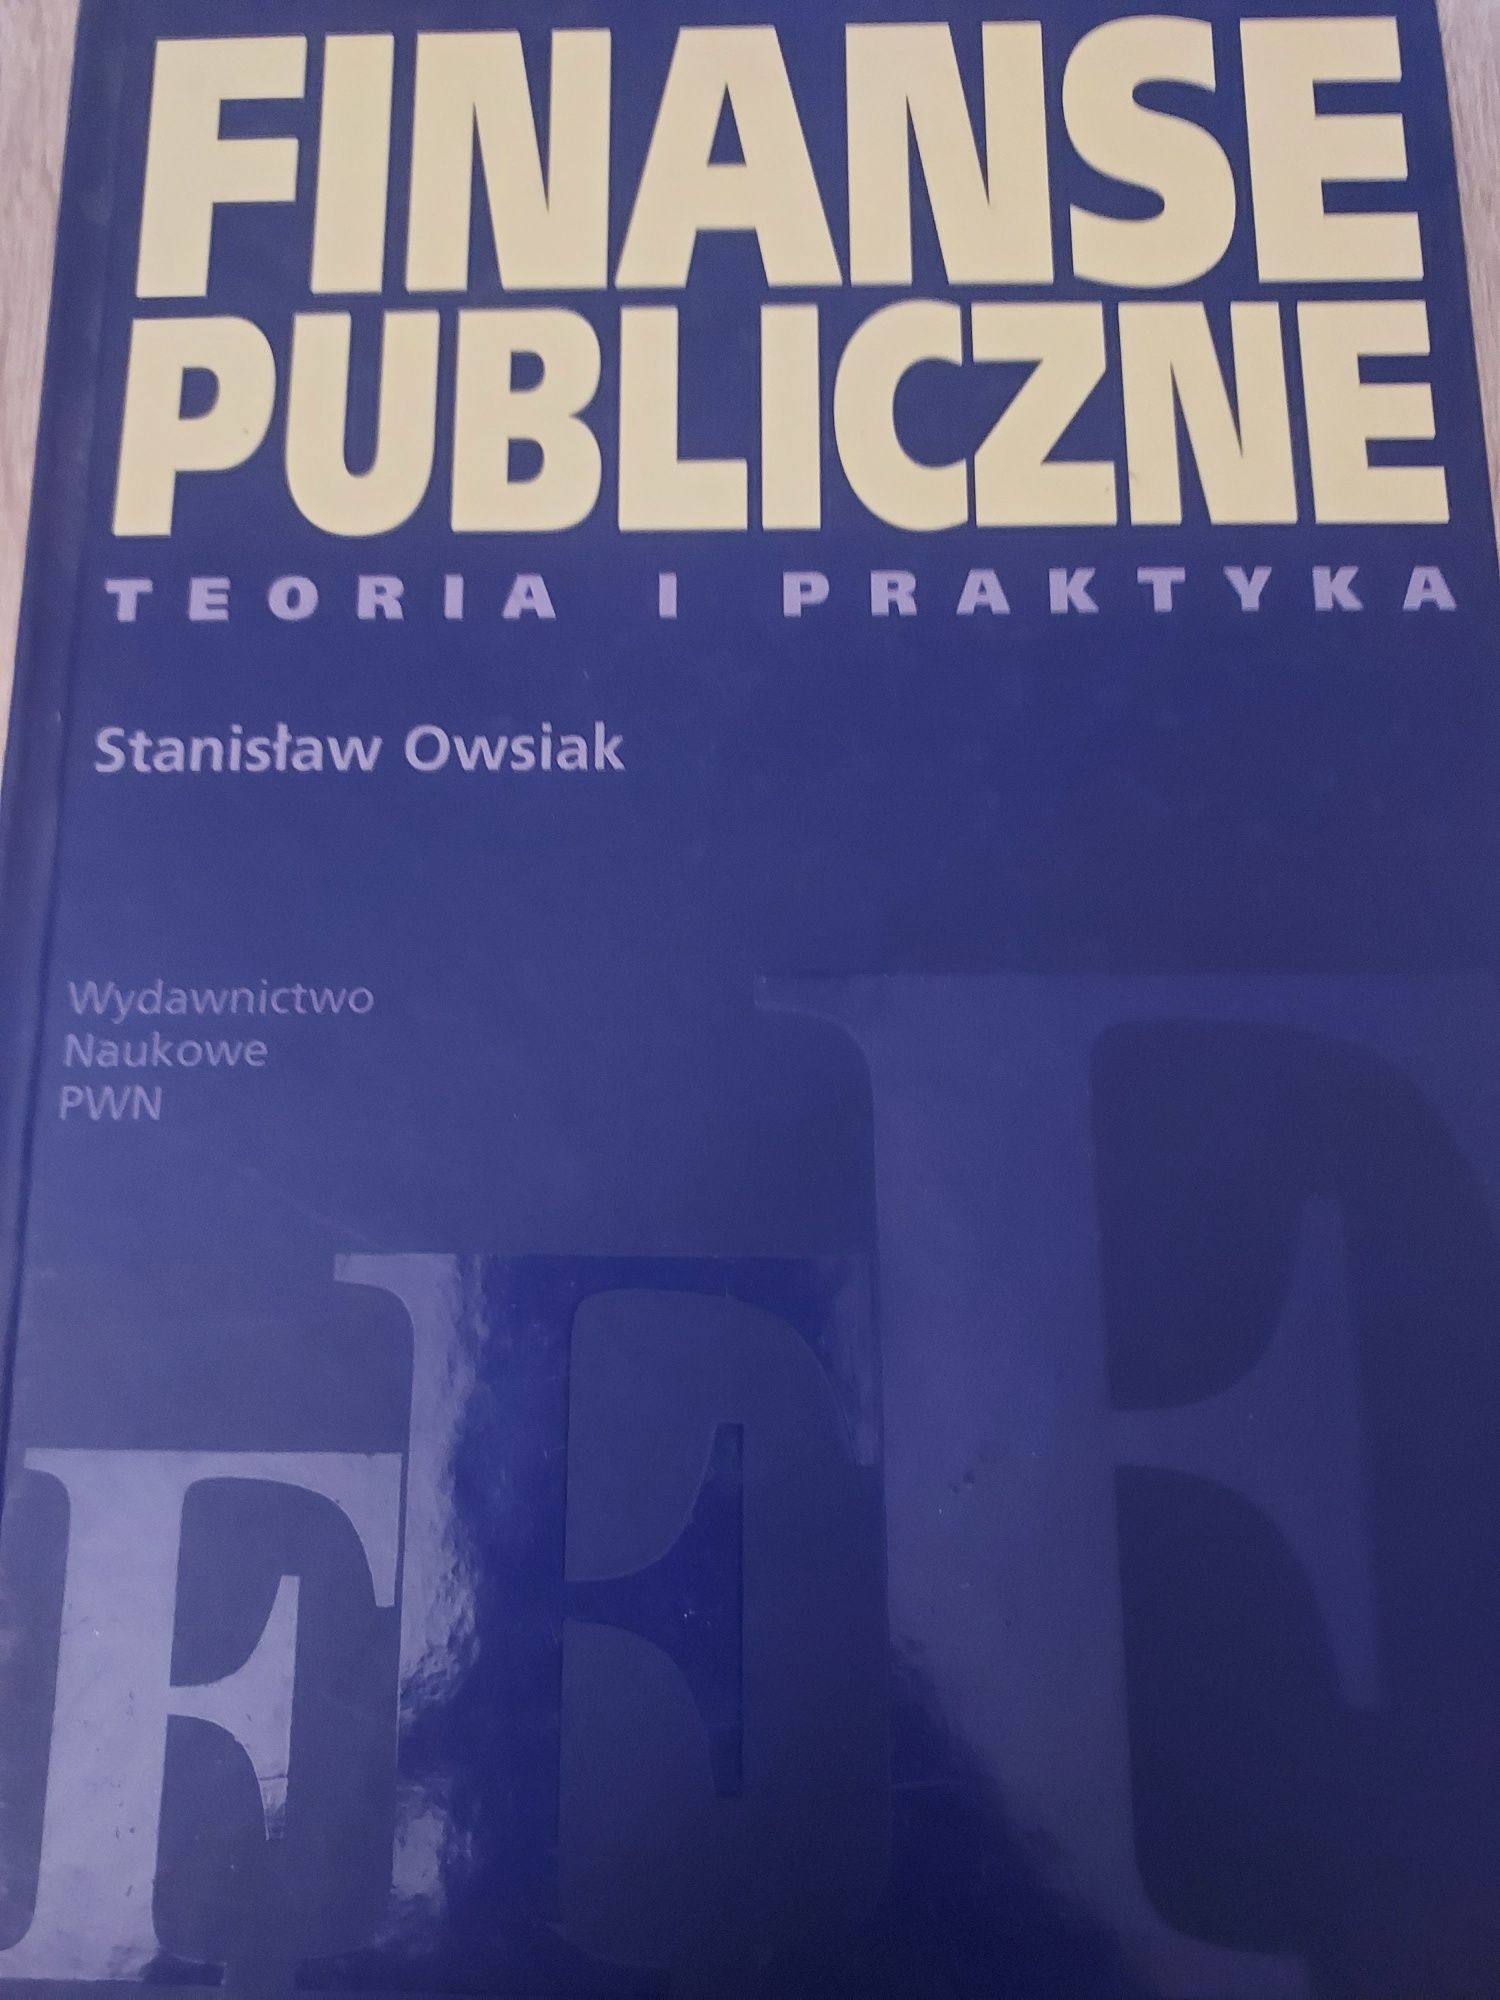 Książka " Finanse publiczne, teoria i praktyka"